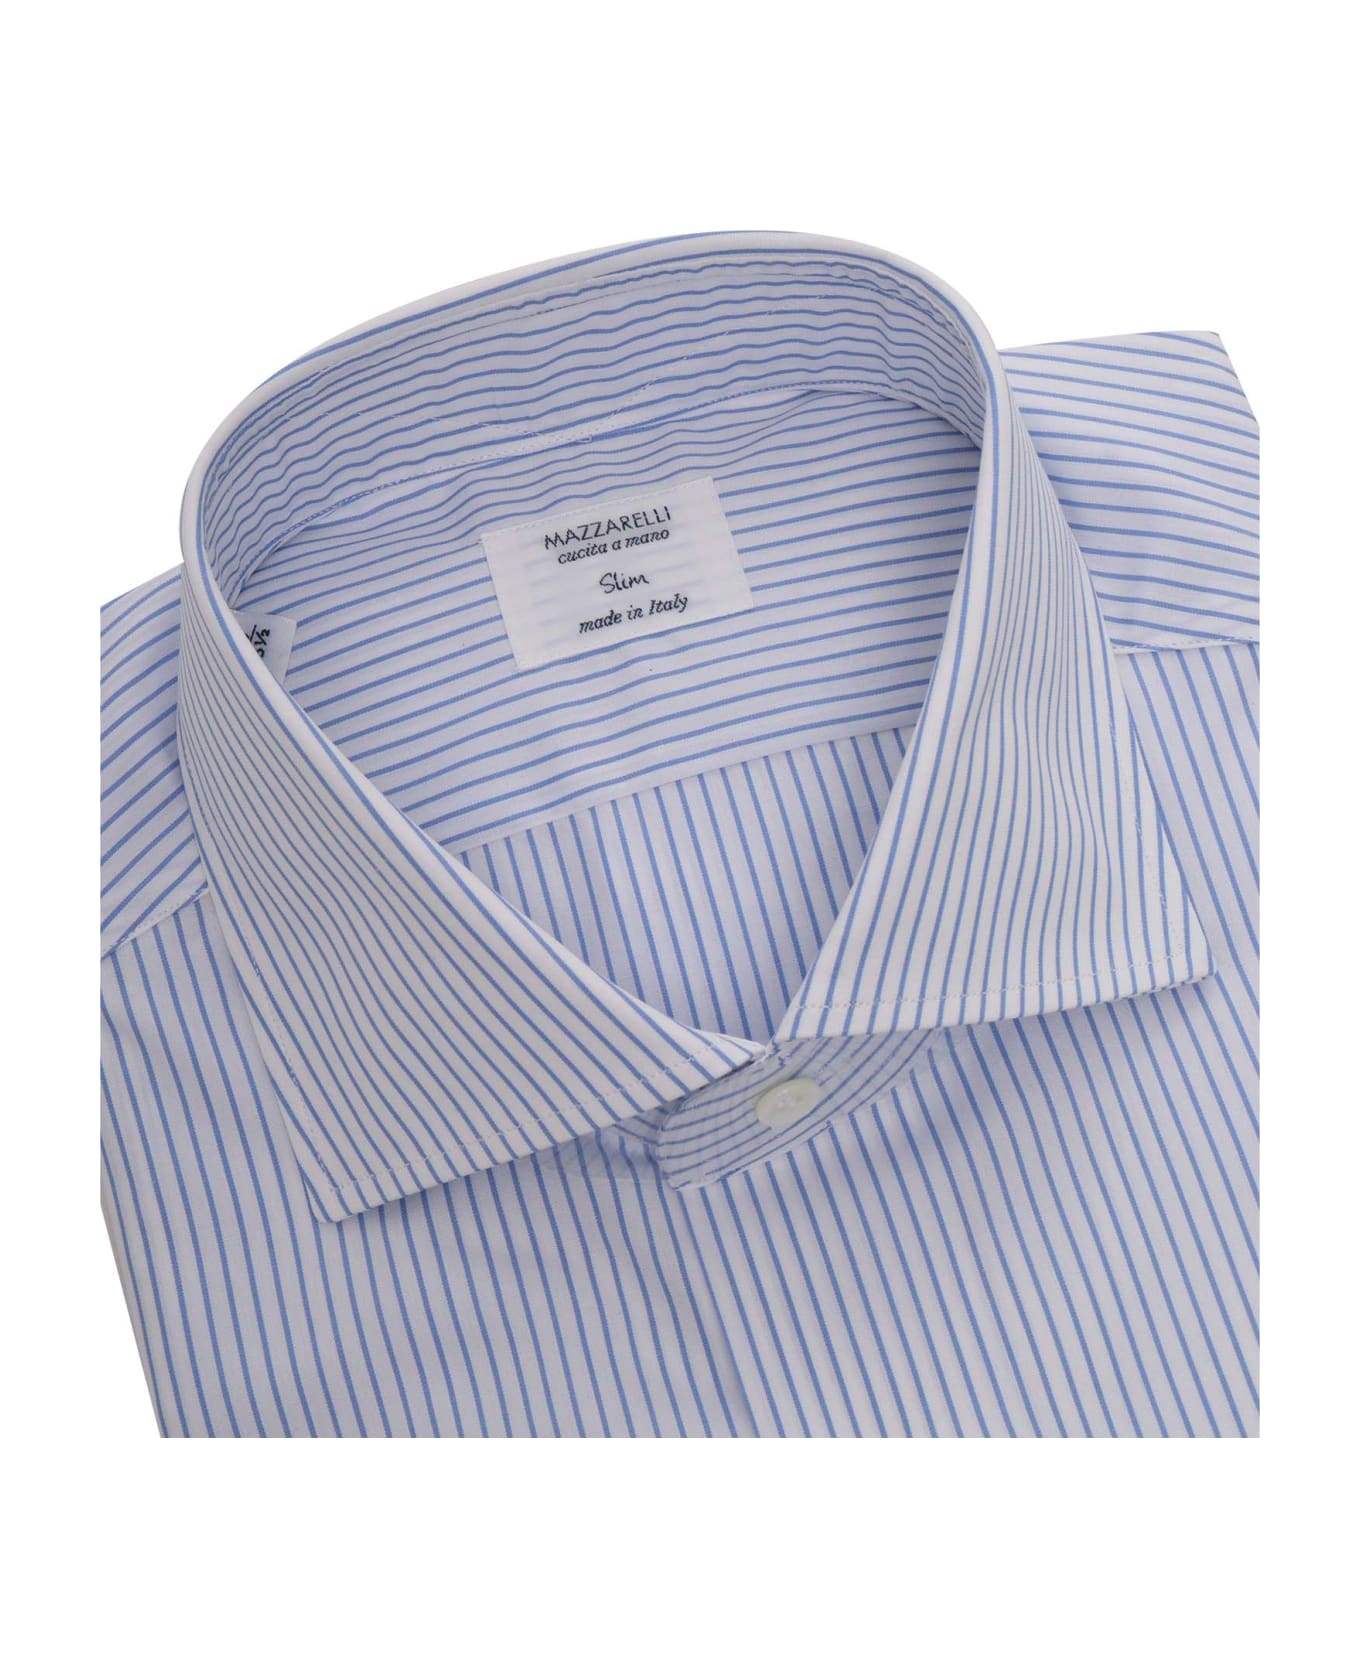 Mazzarelli Striped Shirt - WHITE シャツ